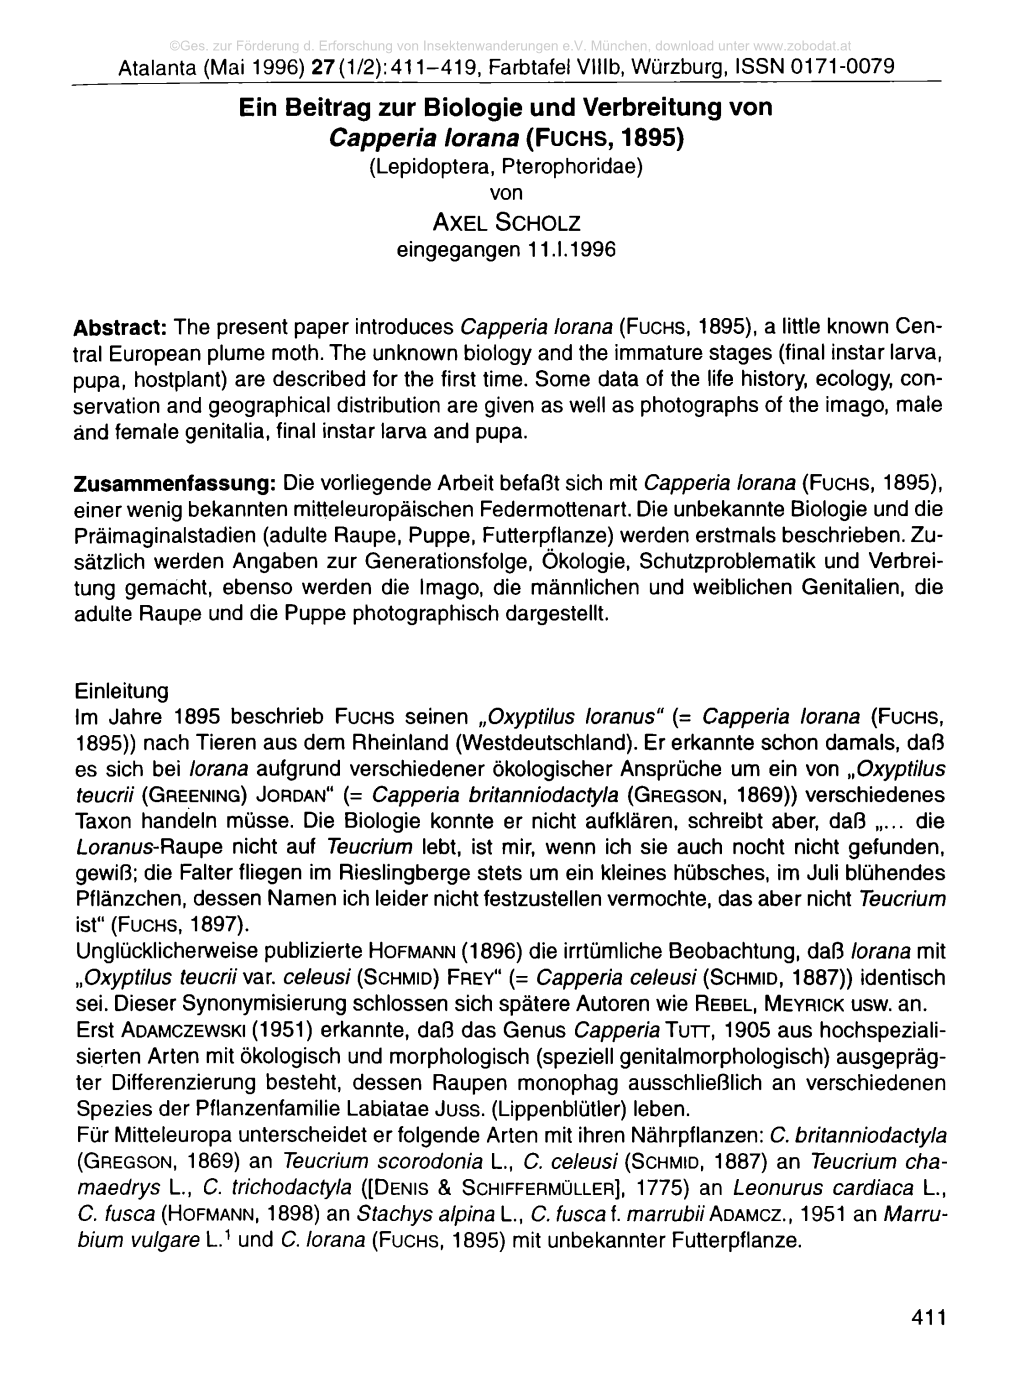 Ein Beitrag Zur Biologie Und Verbreitung Von Capperia Lorana (Fuchs, 1895) (Lepidoptera, Pterophoridae) Von a X E L Sc H O L Z Eingegangen 11.1.1996